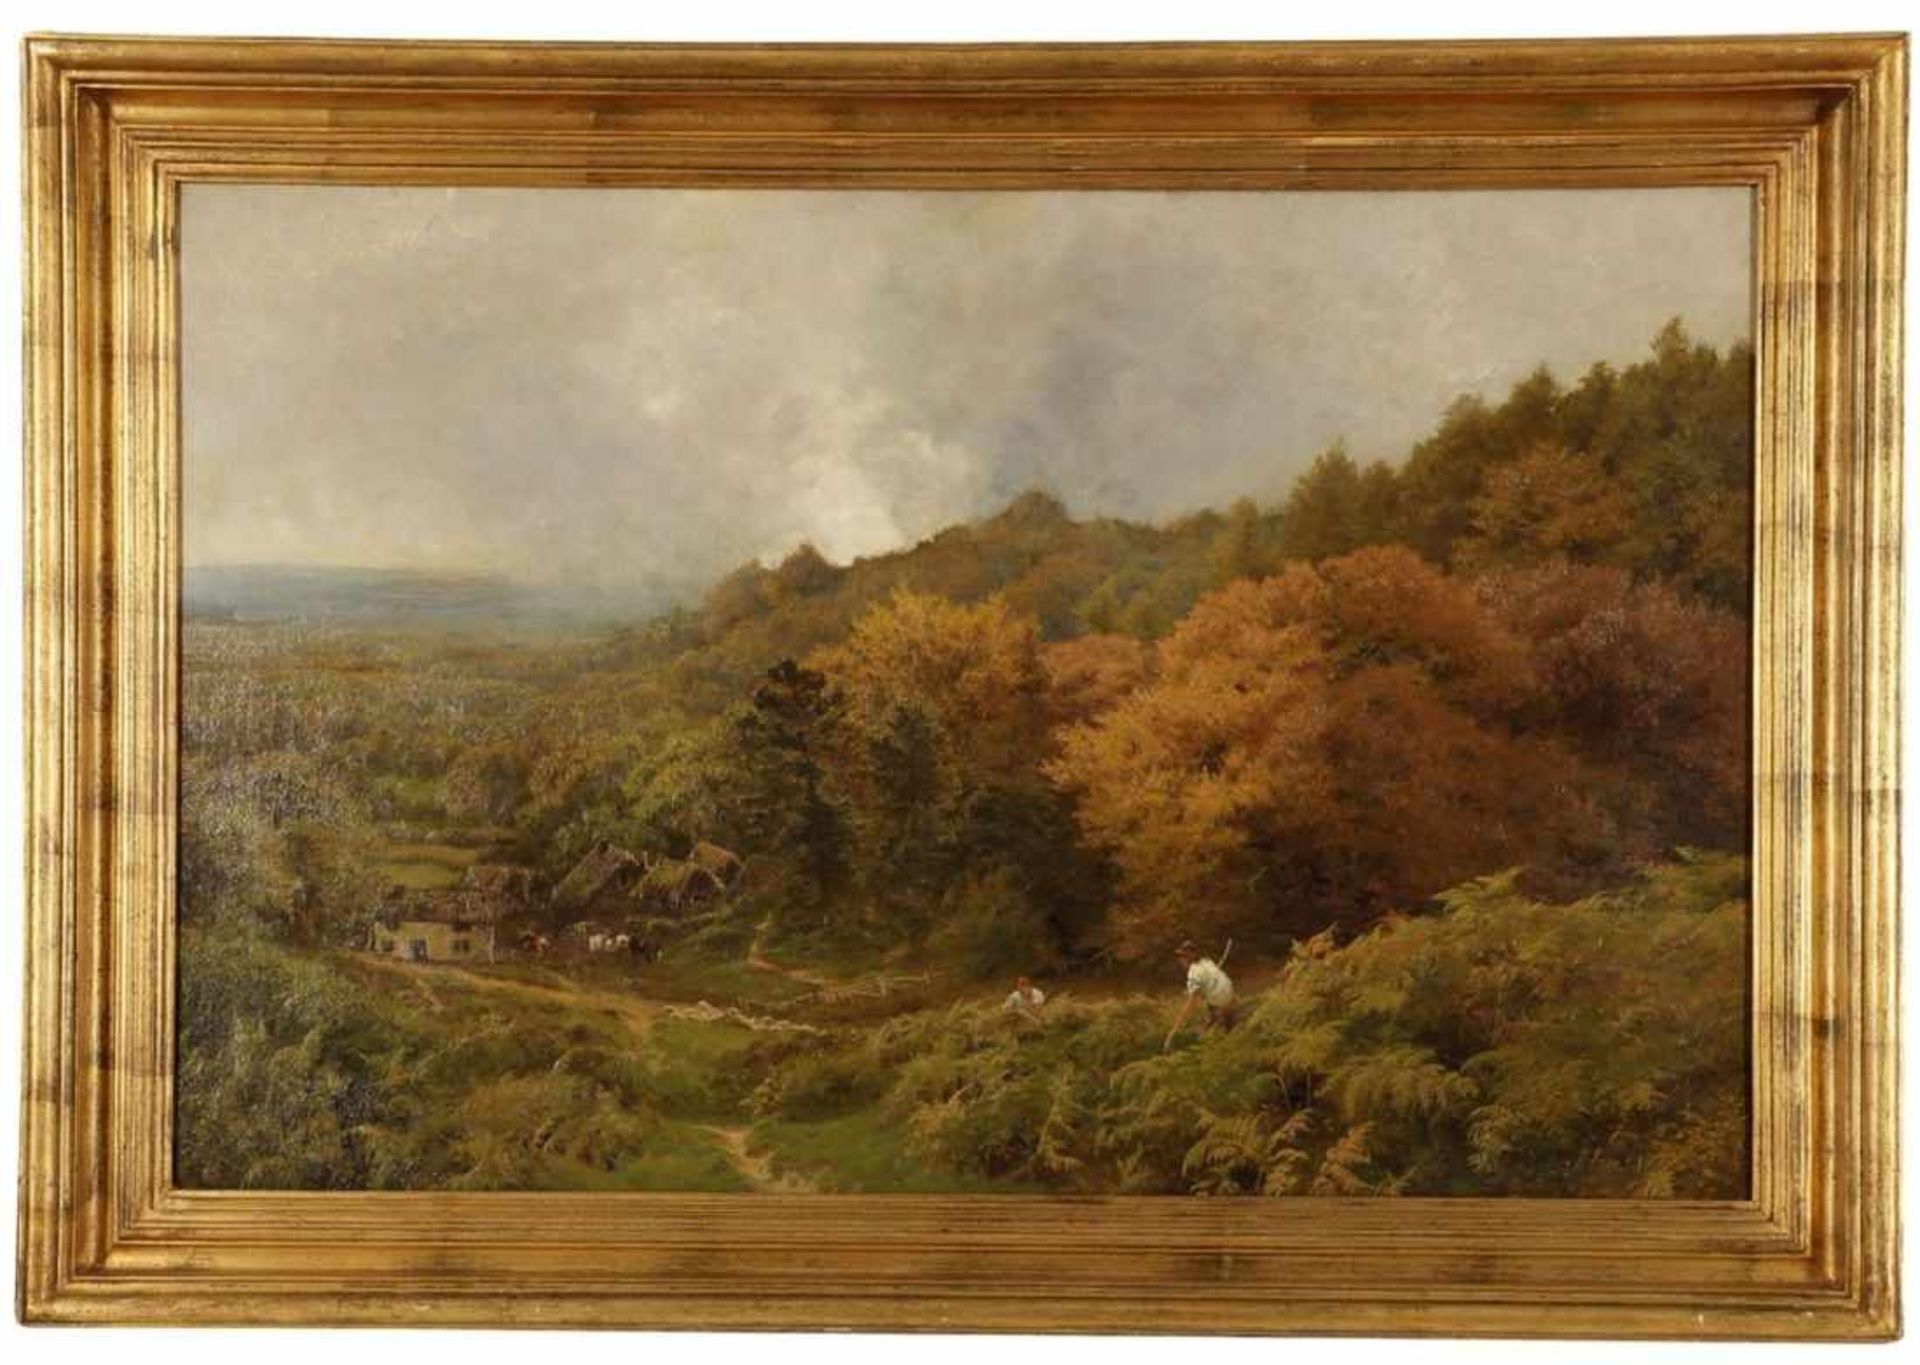 John Clayton Adams 1840 - 1906 - Spätsommerliche Landschaft mit Gehöfft - Öl/Lwd. 61 x 91 cm. - Image 2 of 2